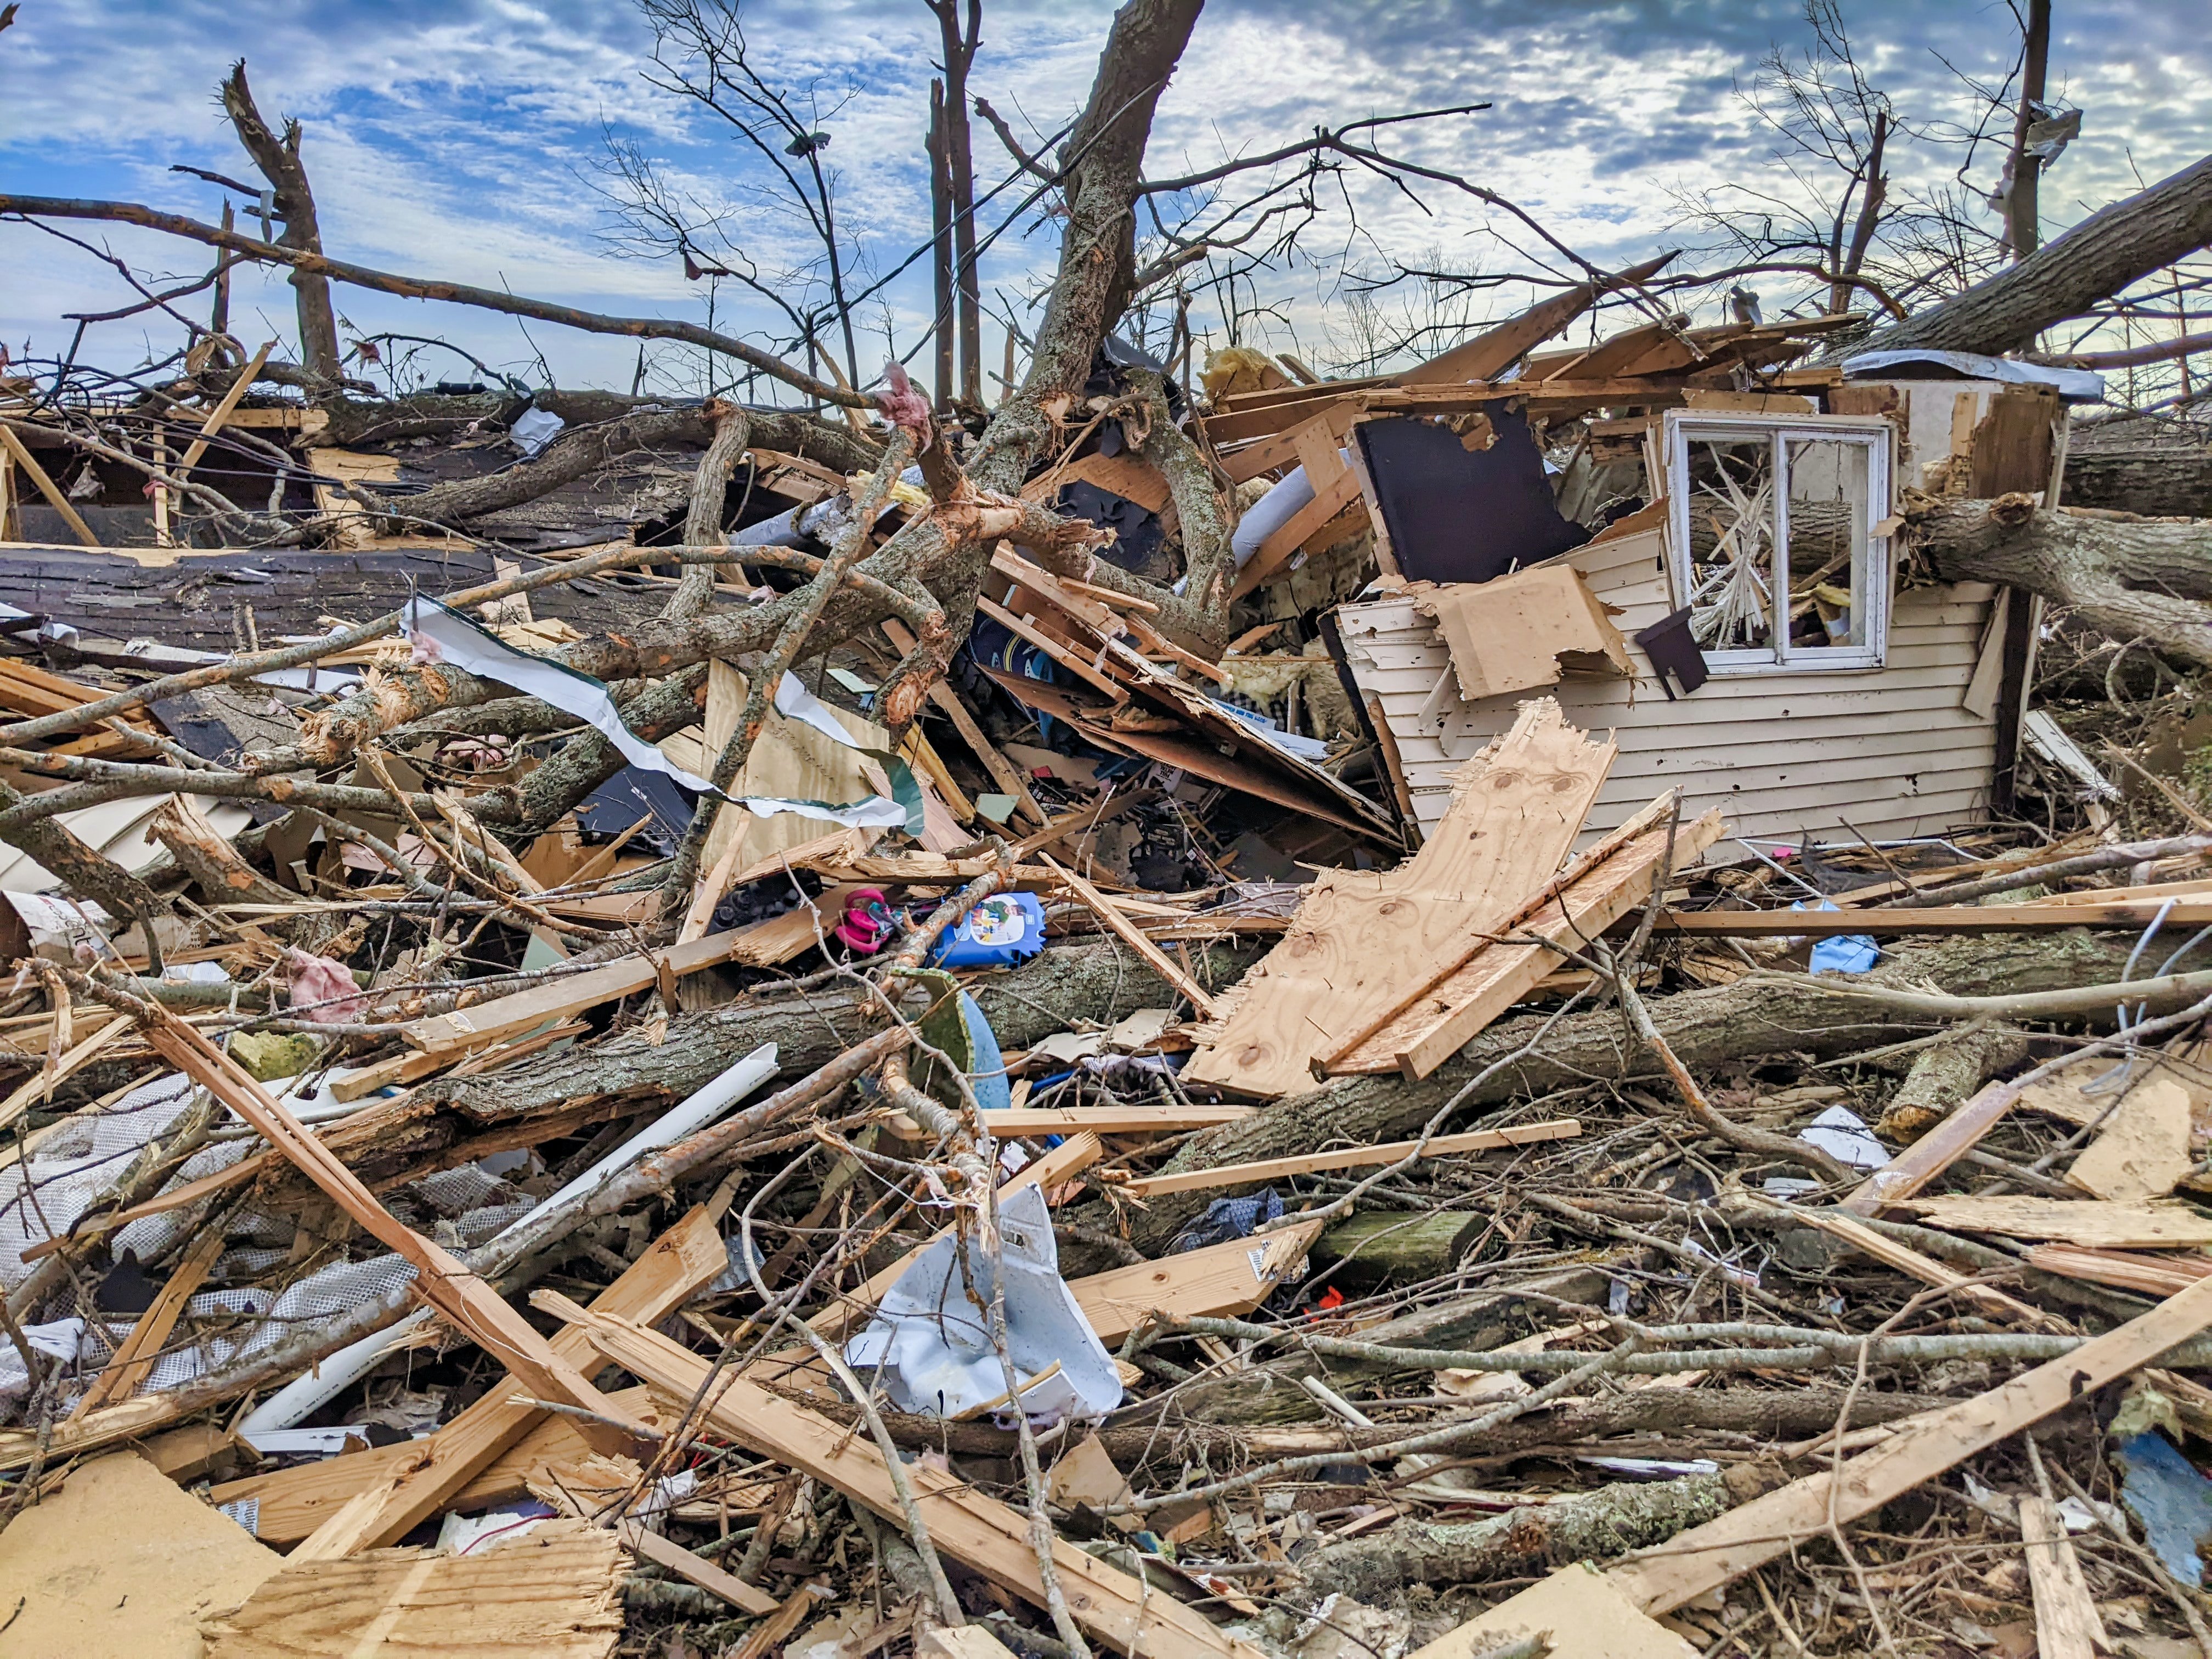 La maison de Diane a été détruite par une tornade. | Source : Unsplash